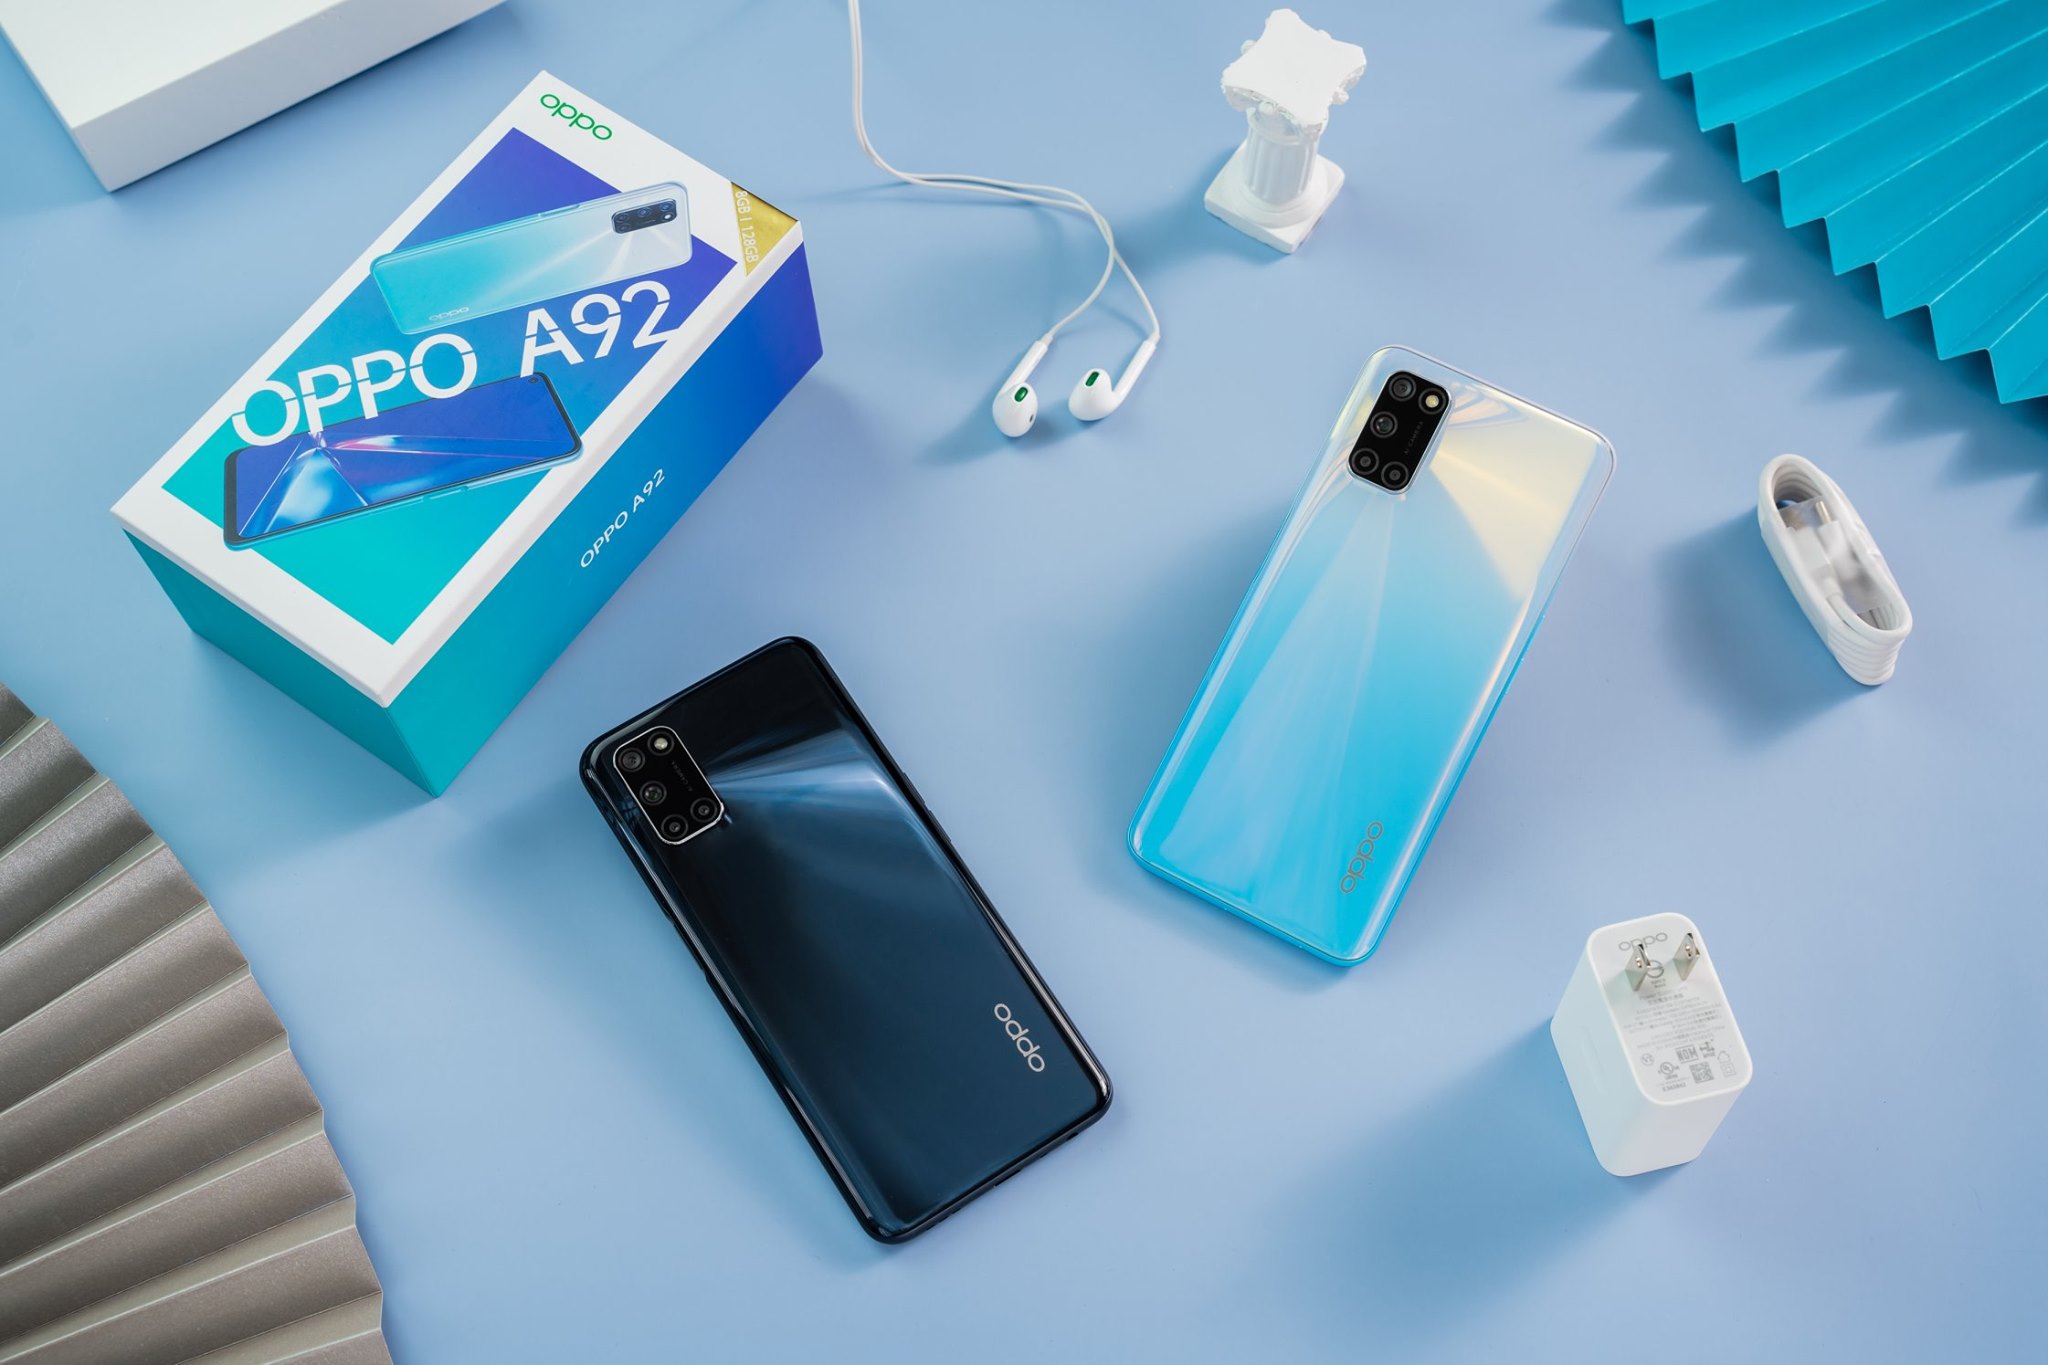 OPPO A92 chính hãng là một trong những smartphone được nhiều người tin yêu và ưa chuộng. Được trang bị những tính năng và công nghệ mới nhất hiện nay, OPPO A92 chính hãng sẽ là một lựa chọn tuyệt vời cho những ai đang tìm kiếm một chiếc điện thoại đáng giá với giá trị tốt nhất. Hãy xem mở hộp OPPO A92 để khám phá thêm về sản phẩm này nhé!